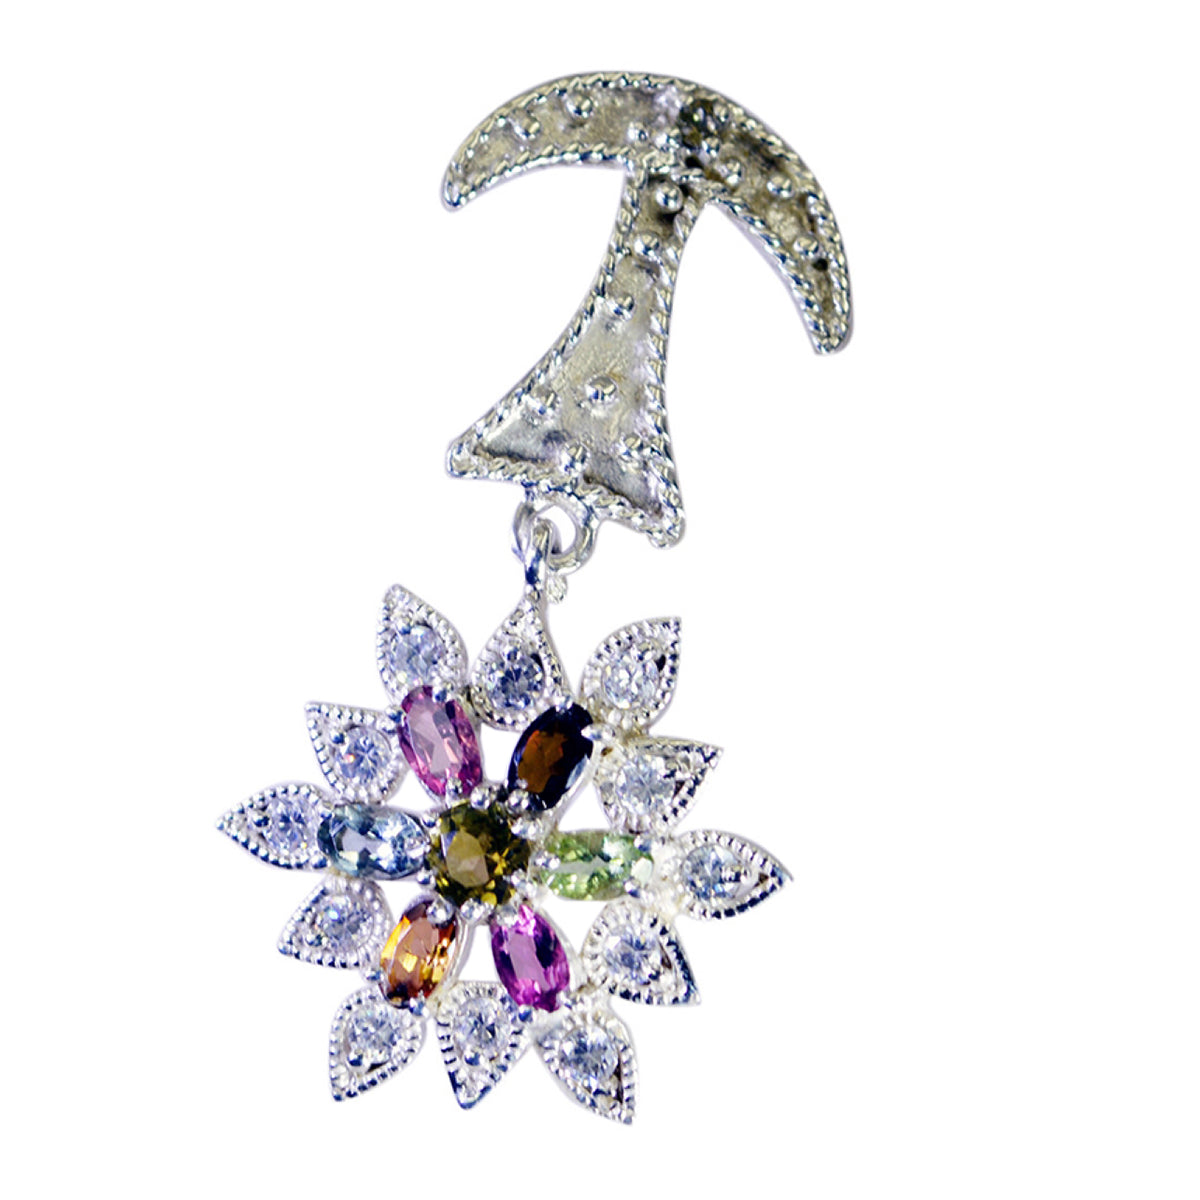 riyo foxy gems ovale facettes multi couleur tourmaline pendentif en argent massif cadeau pour mariage